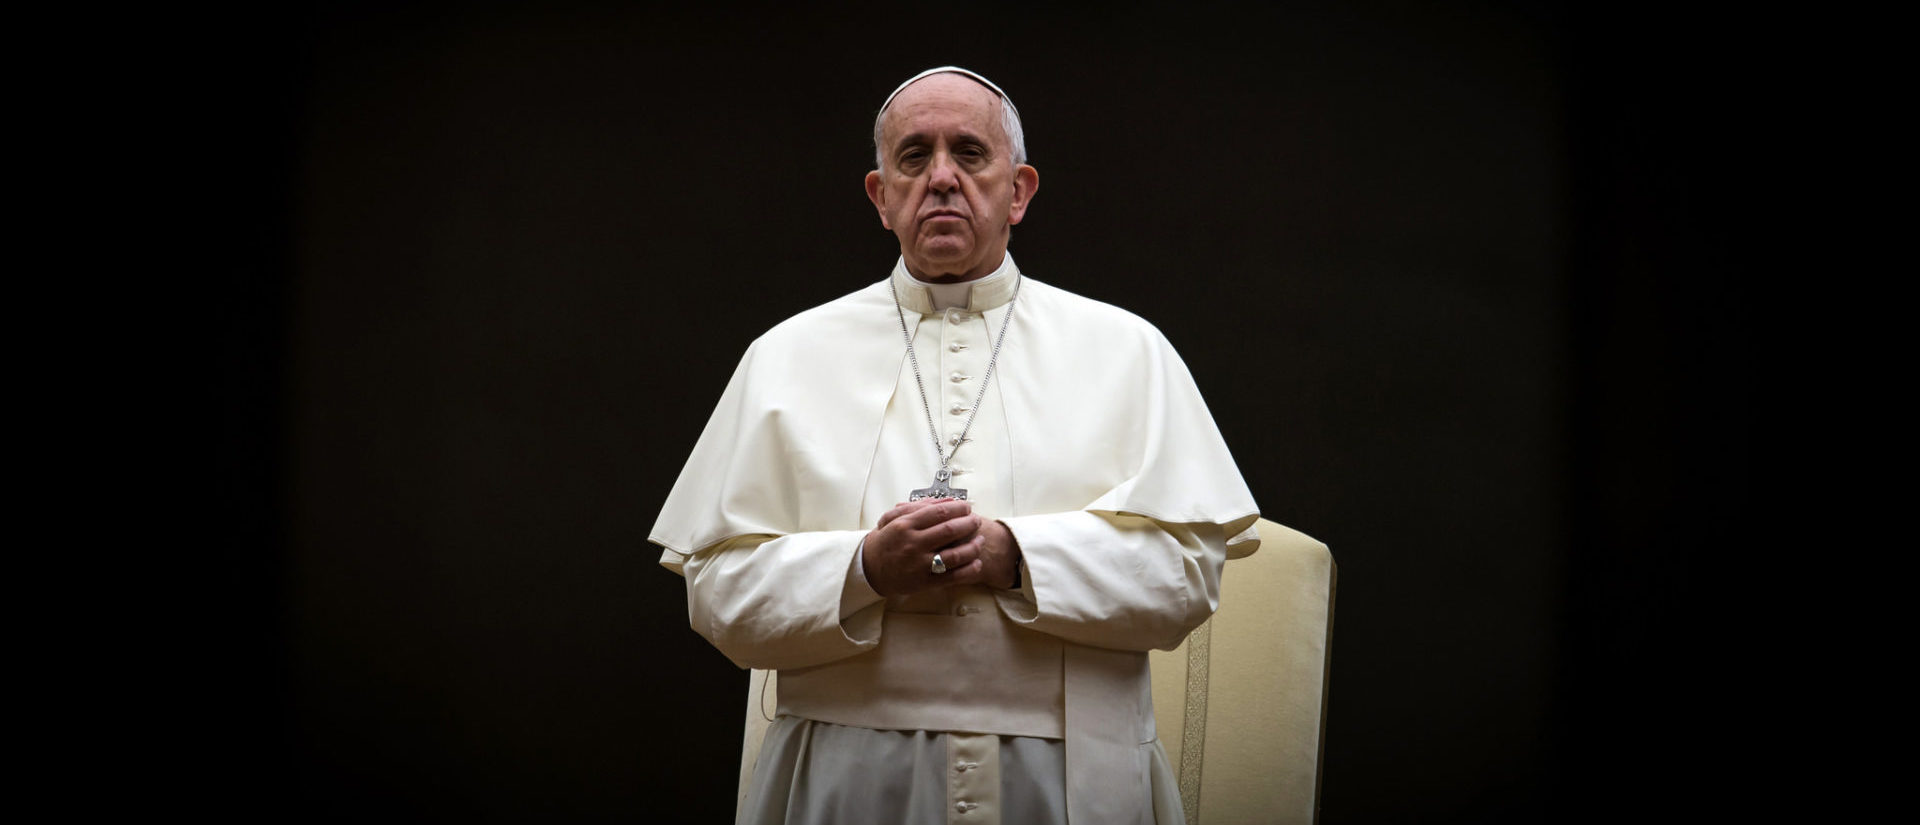 Le pape François a transmis ses condoléances | © flickr/catholicism